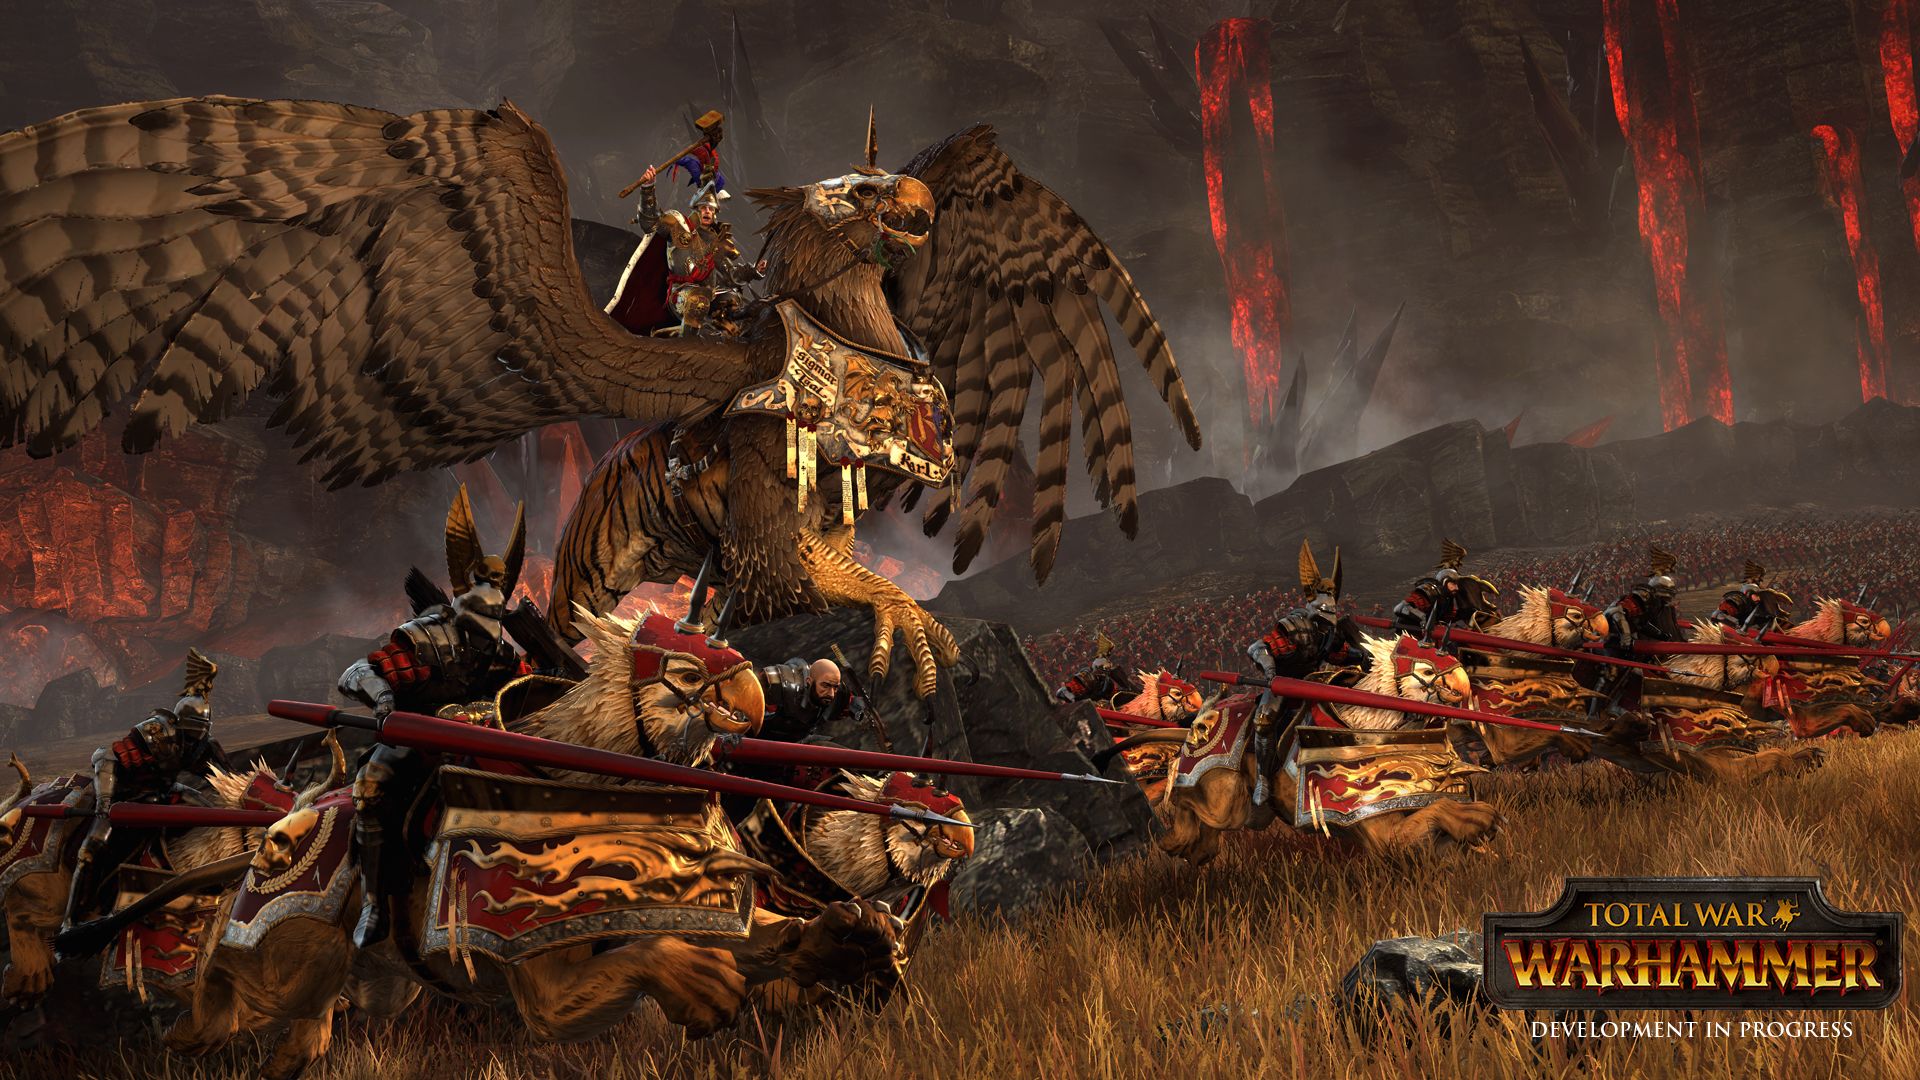 [Gamescom 2015] Total War: Warhammer – First Look